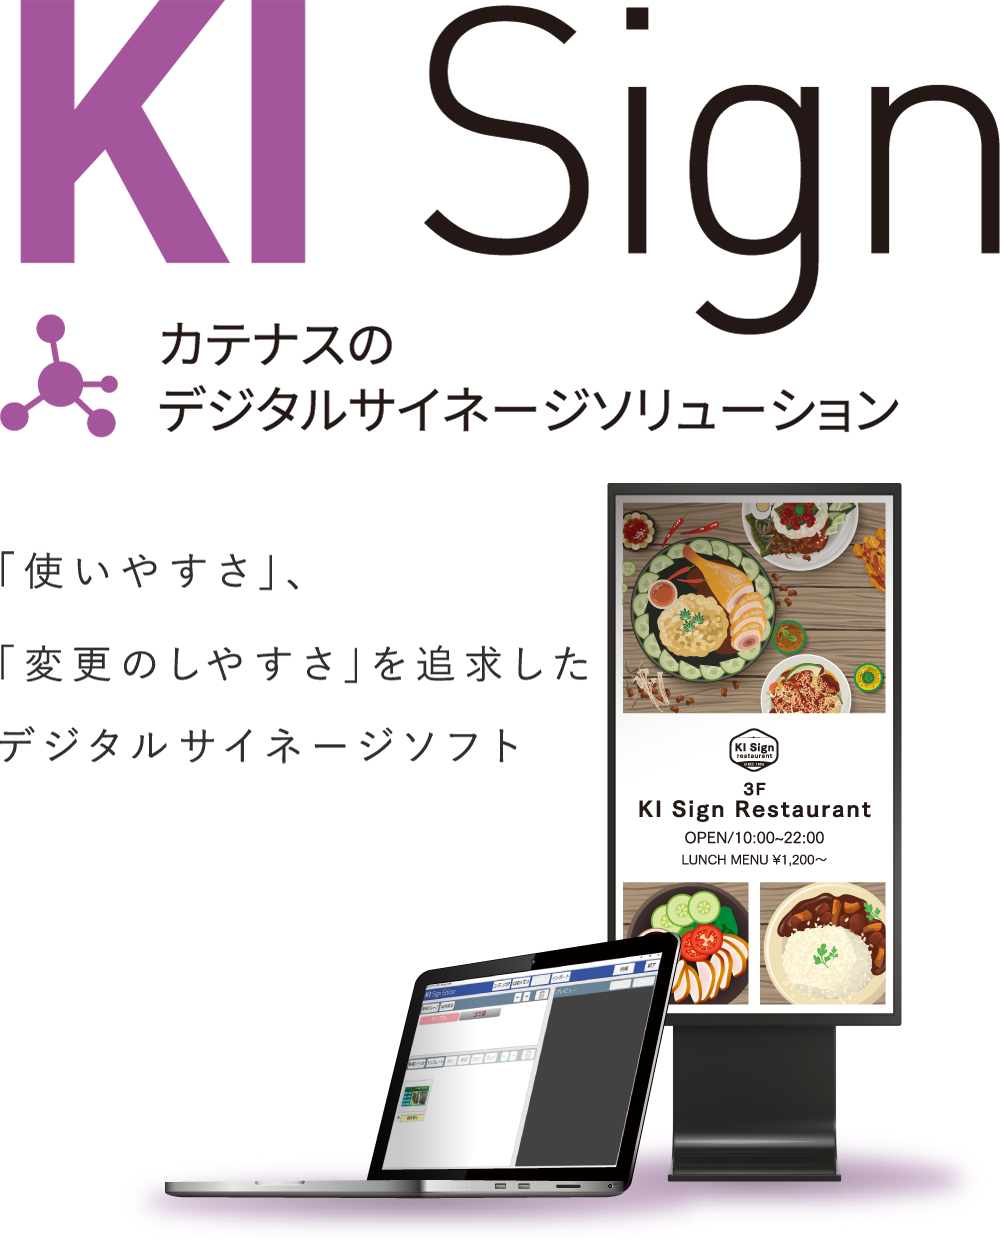 デジタルサイネージソフトウェア「KI Sign」